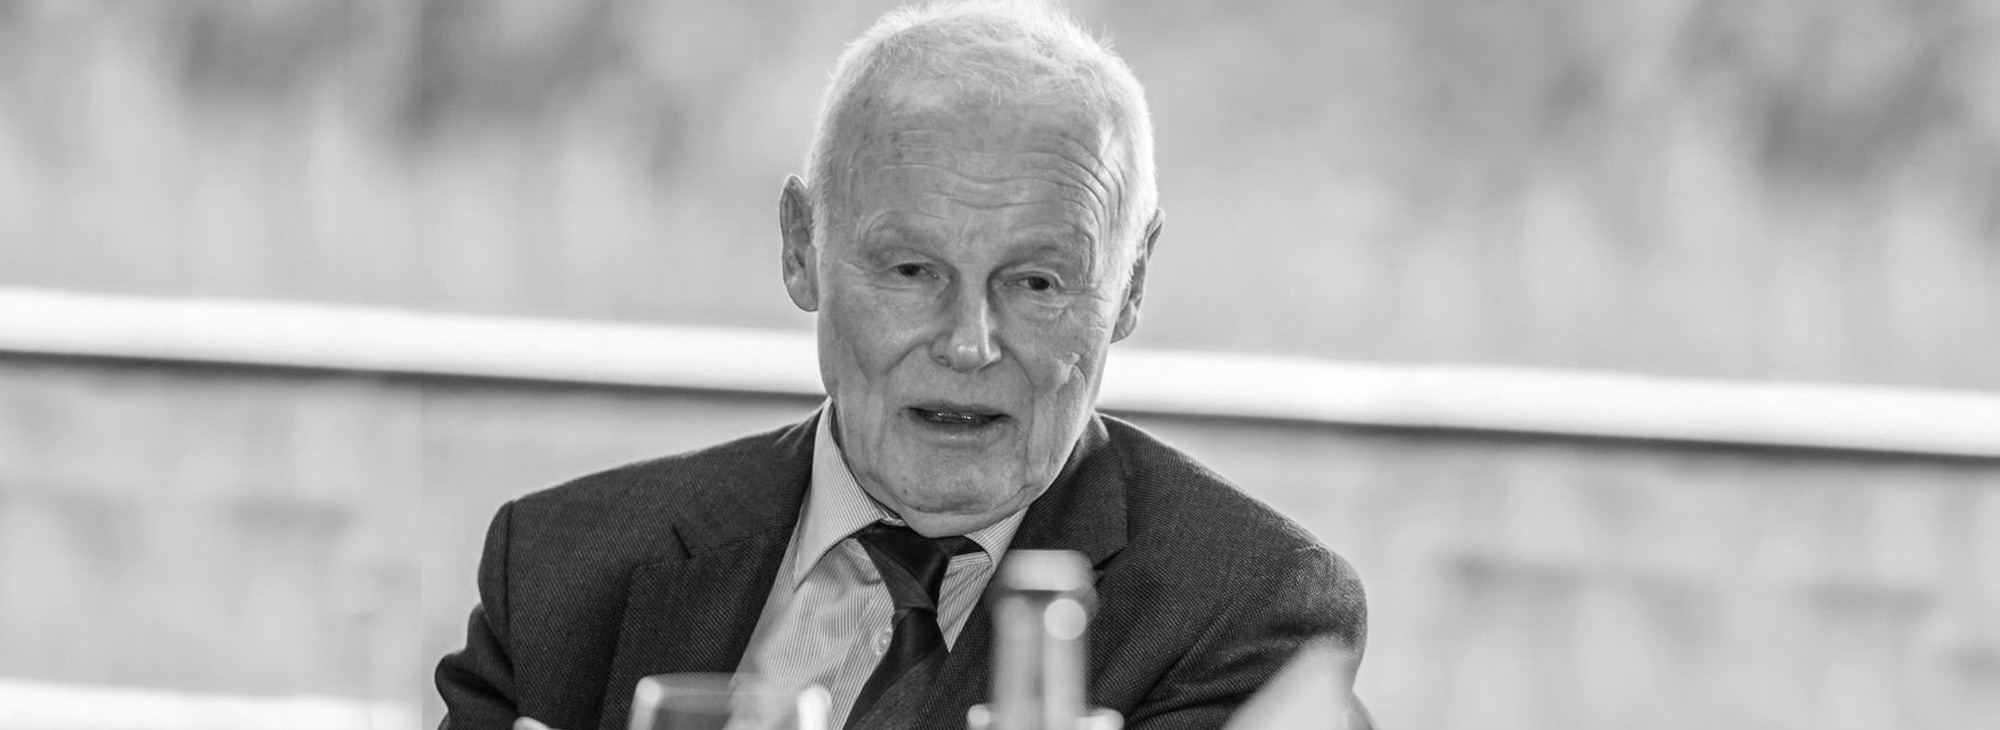 GRBV | Unser ehemaliger Geschäftsführer Reiner Nolting ist verstorben